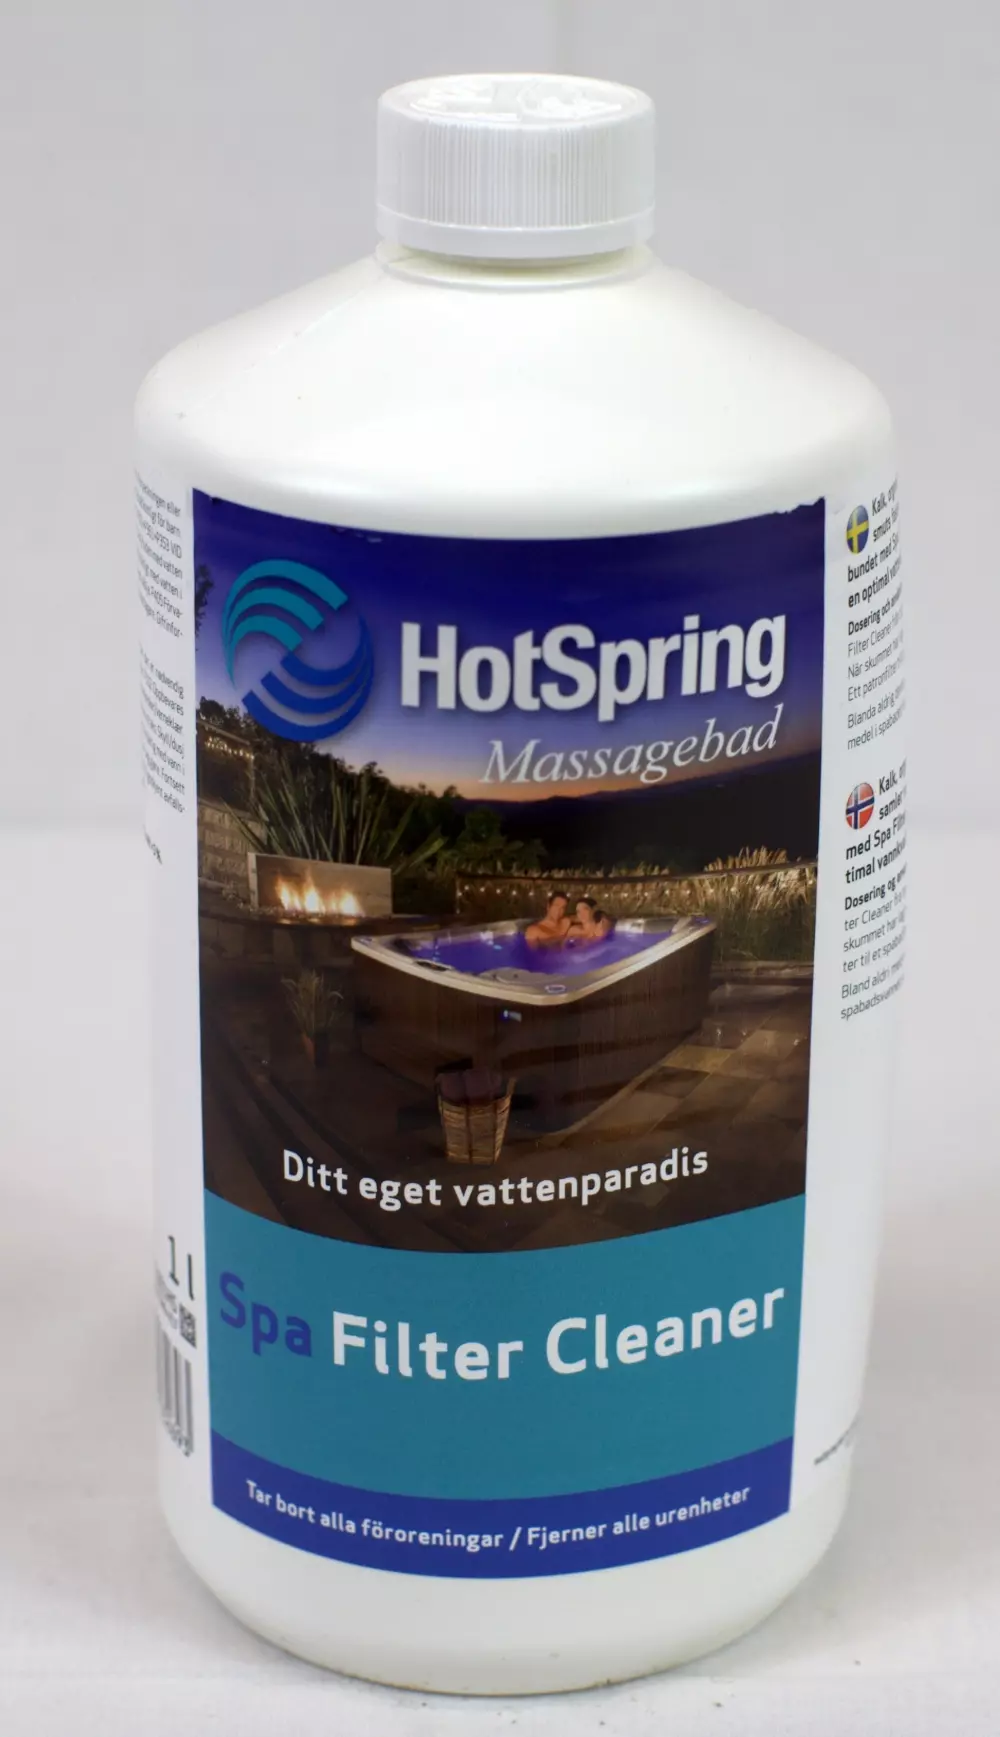 Spa Filter Cleaner 1 ltr, 4029156032693, 100087, HOTSPRING Spa Filter Cleaner, 1,0 ltr flaska, 4541001HS, For en optimal vannkvalitet